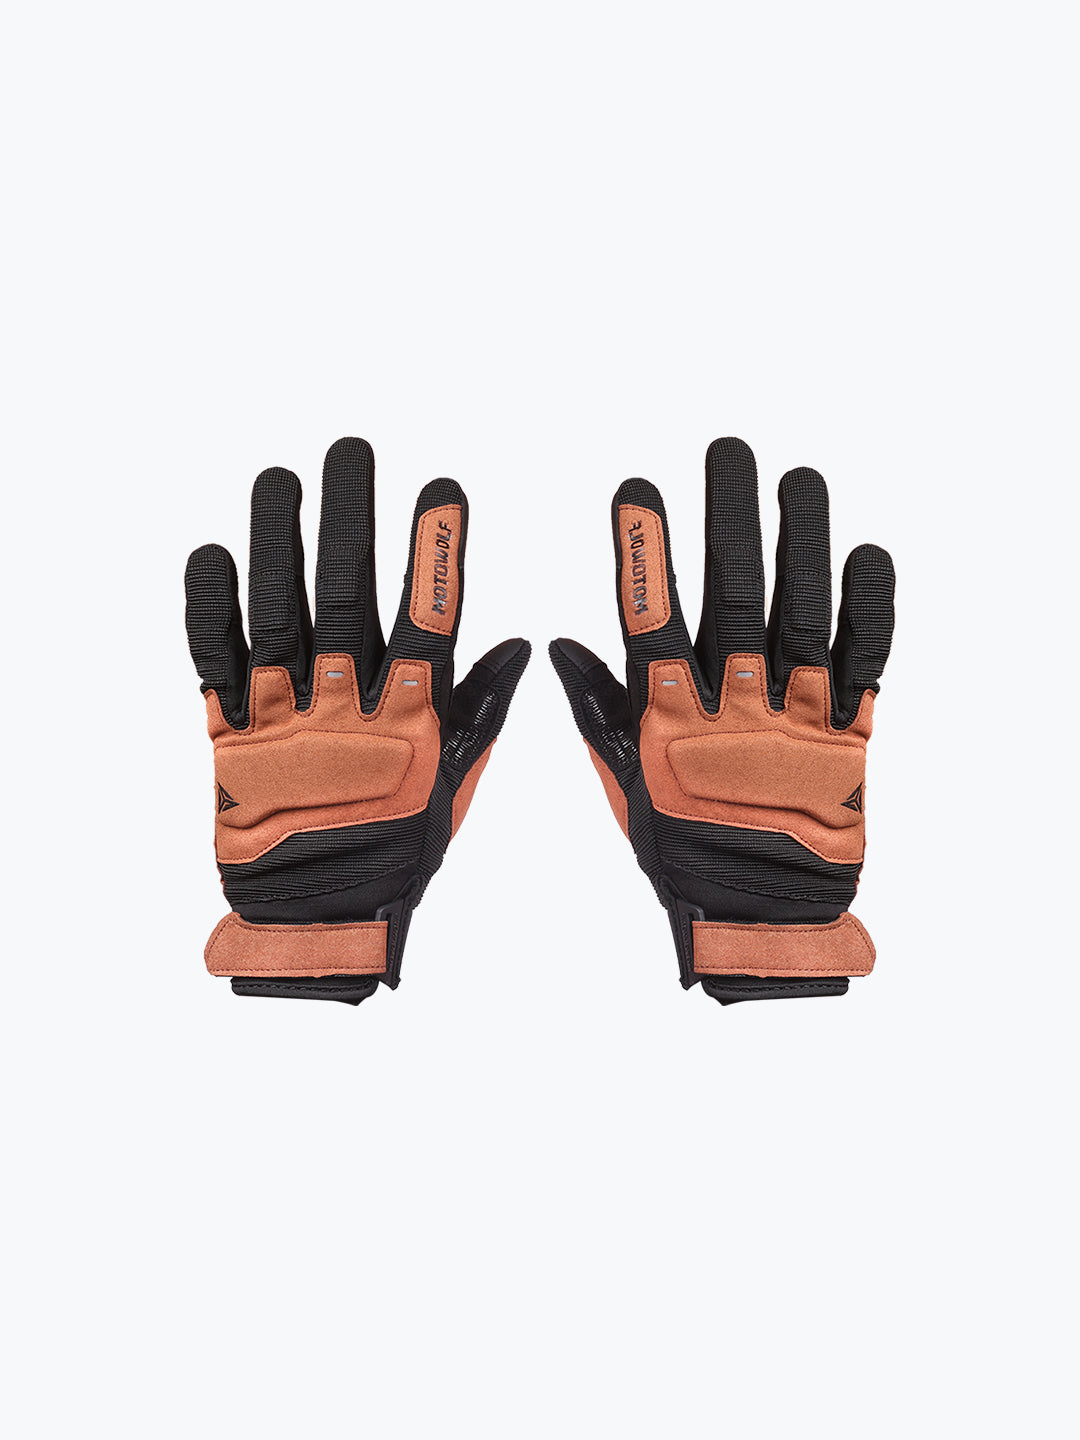 Motowolf Gloves Brown 0325